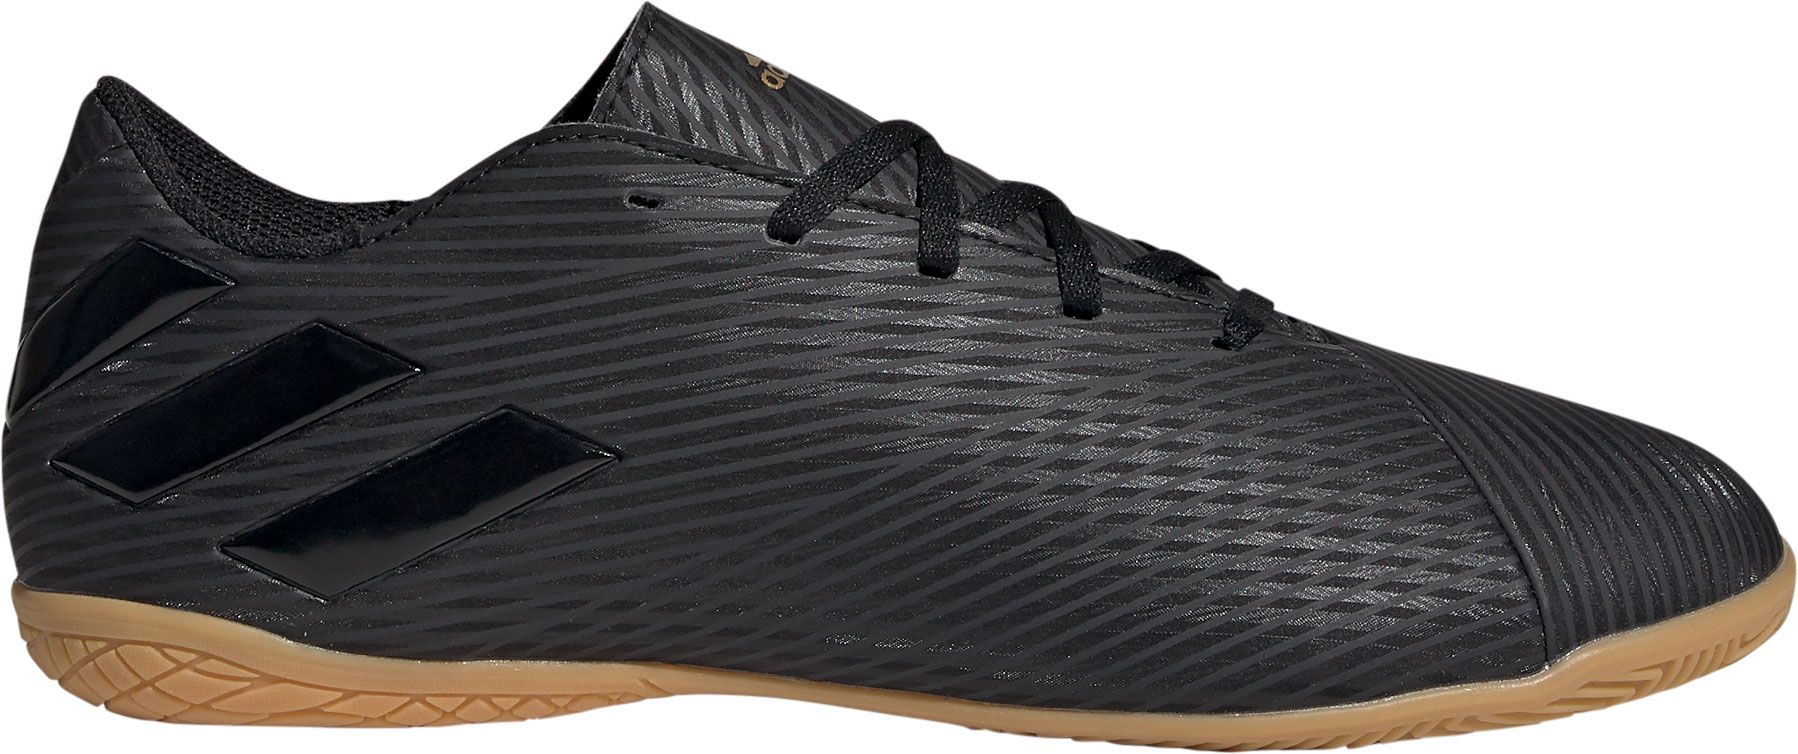 adidas nemeziz indoor soccer shoes